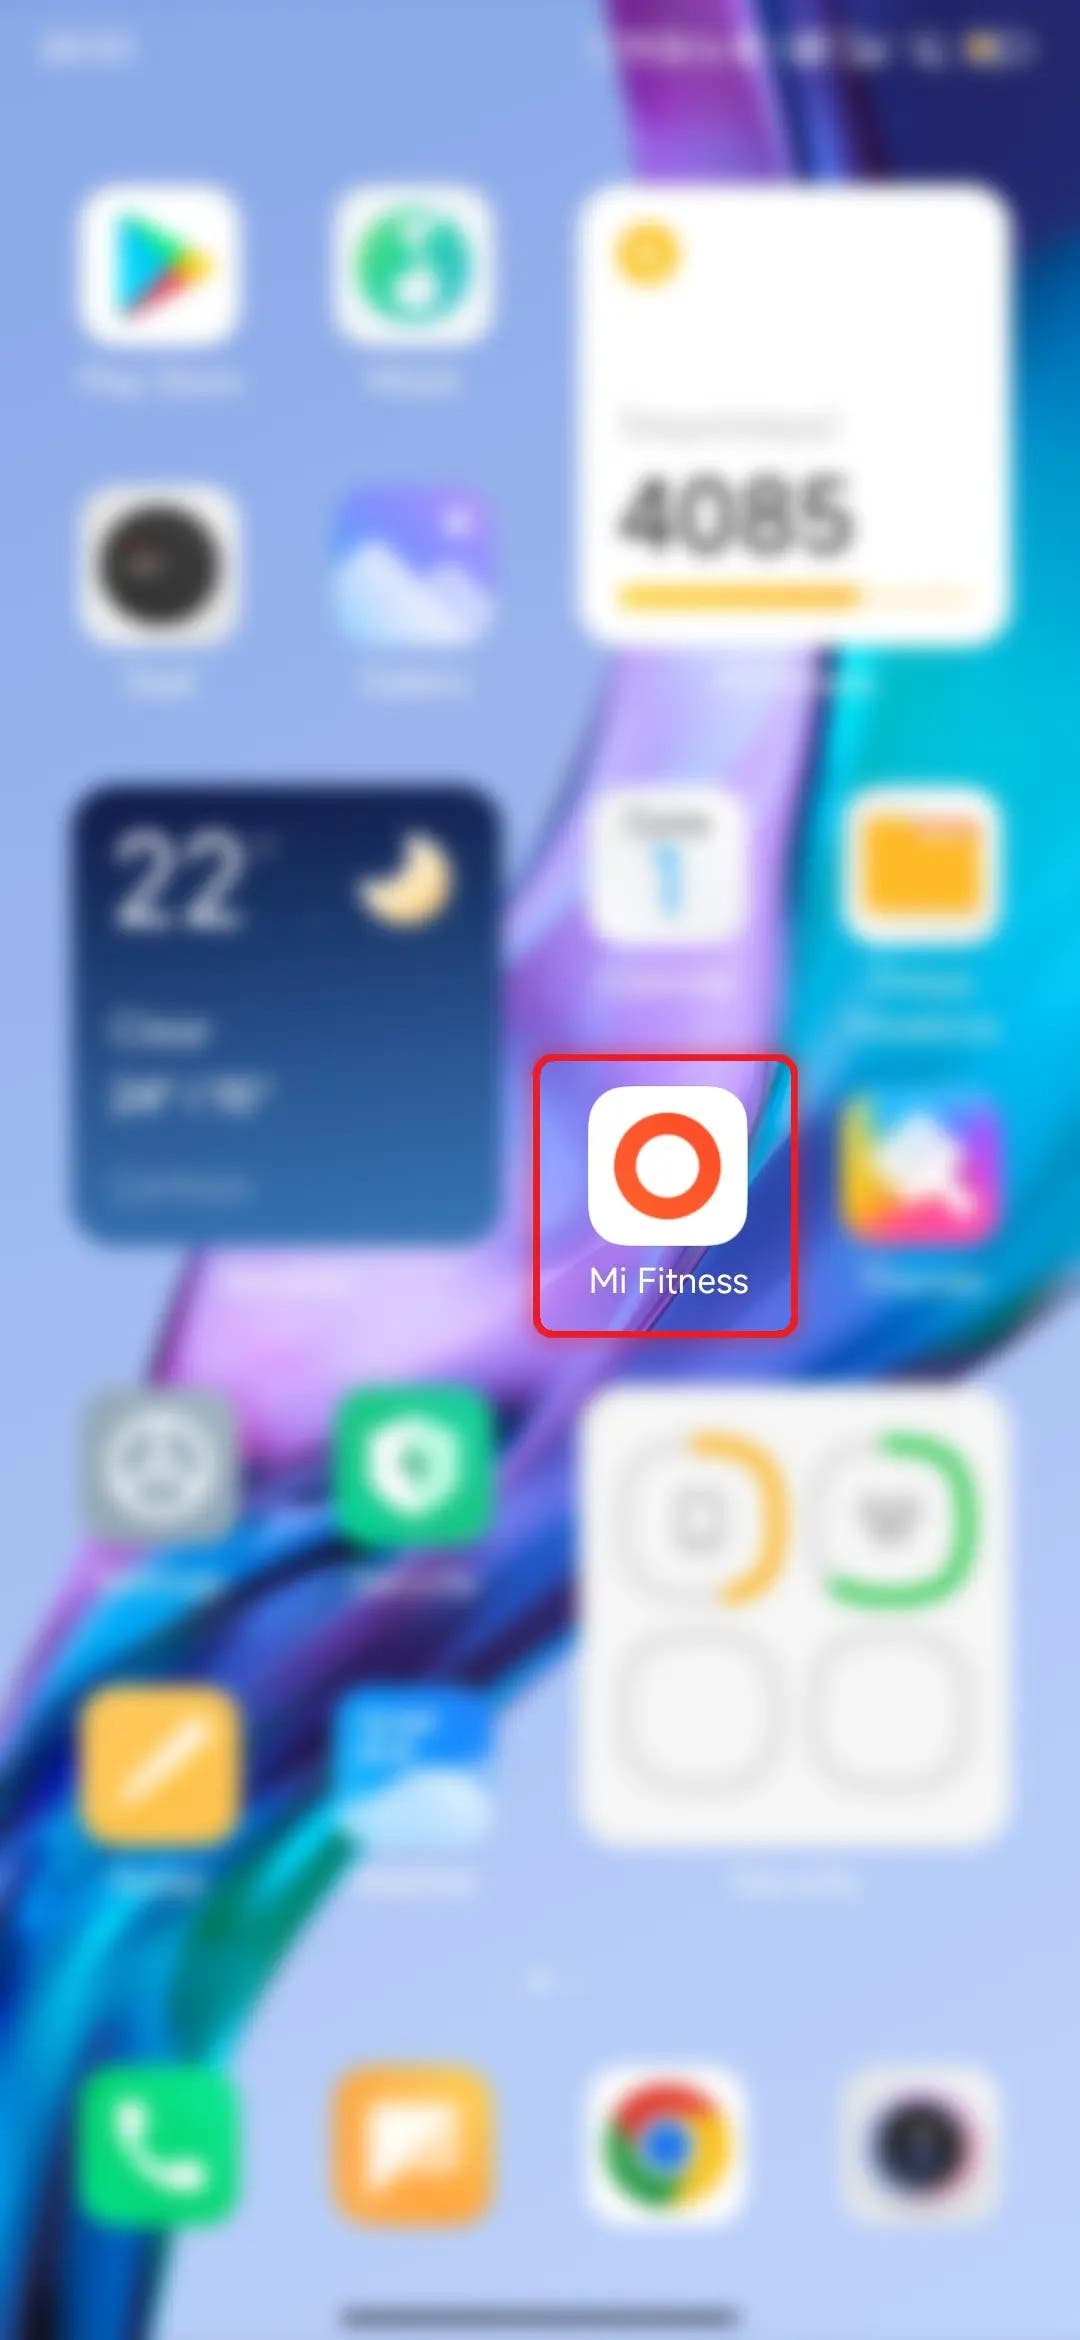 Xiaomi Band 7 Pro